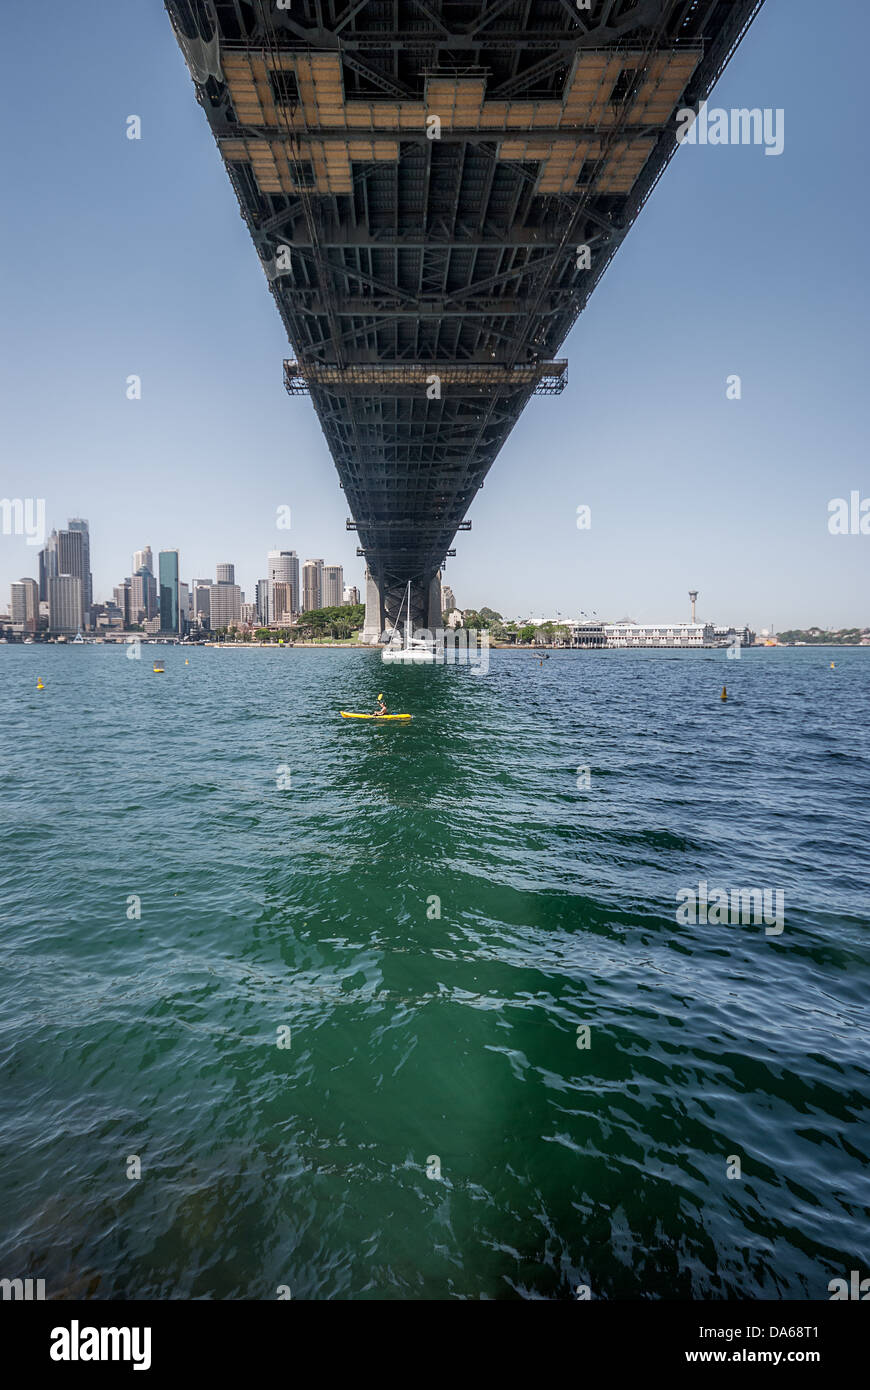 Una vista unica di una barca a vela, nanizzata dalla parte inferiore dell'iconico Sydney Harbour Bridge, che si estende dal centro a North Sydney. Foto Stock